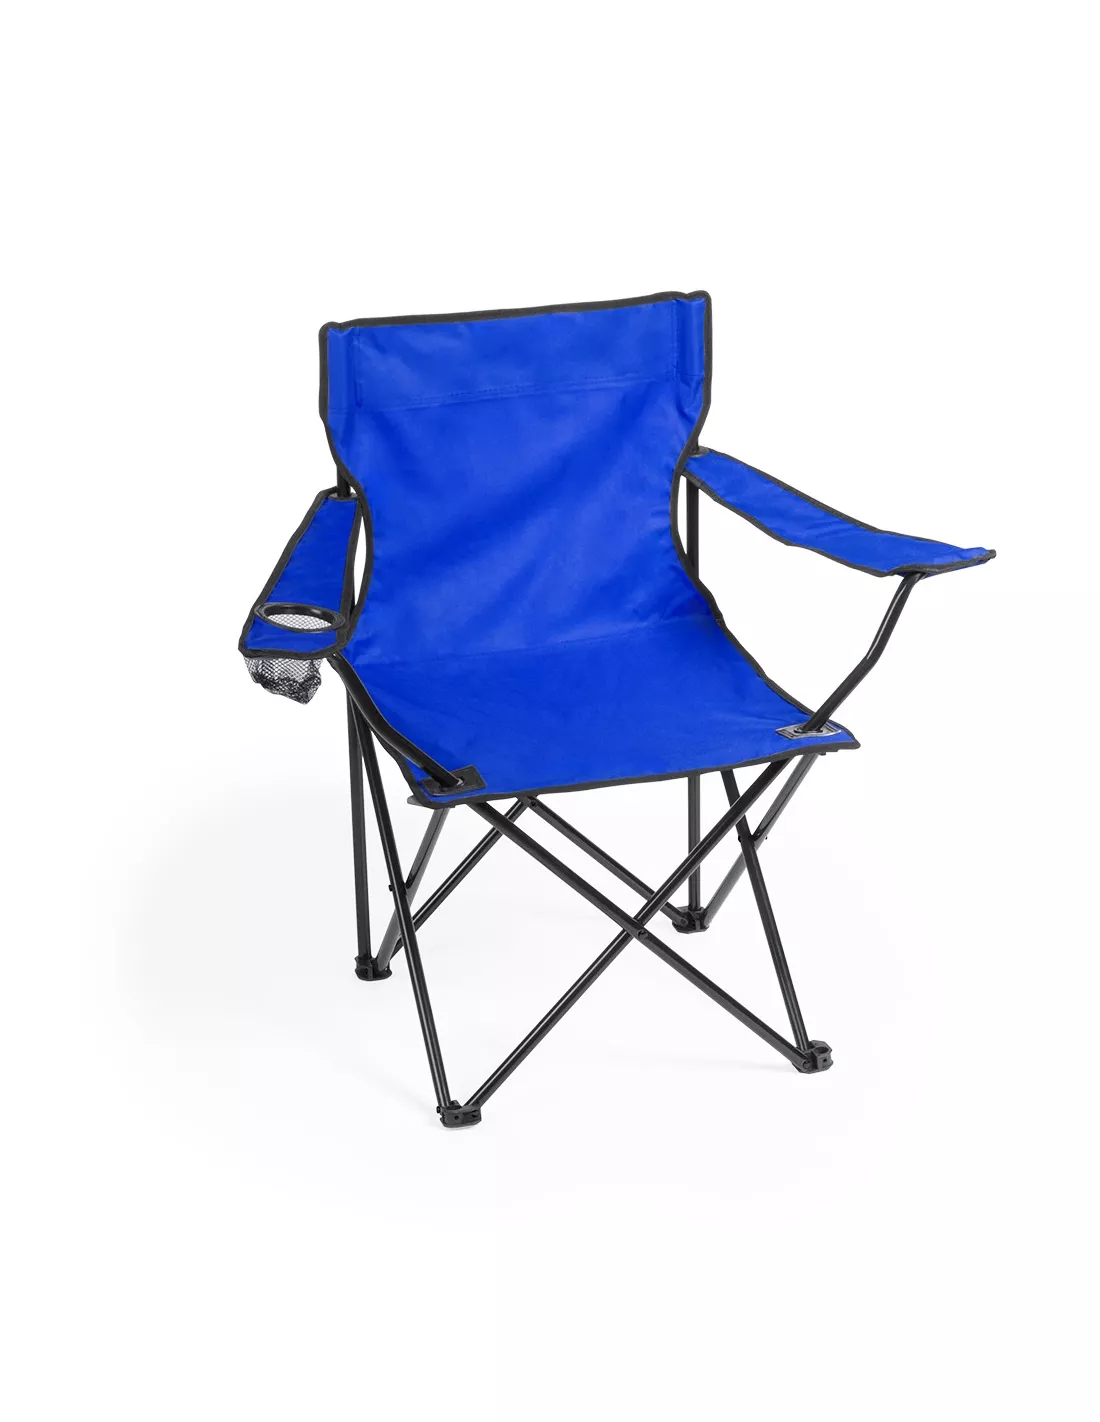  ANIIC Sillas de camping, muebles de exterior, sillas de playa,  camping, silla plegable, portátil, de madera maciza, asiento de playa al  aire libre, boceto, silla de ocio, sillas plegables, sillas de